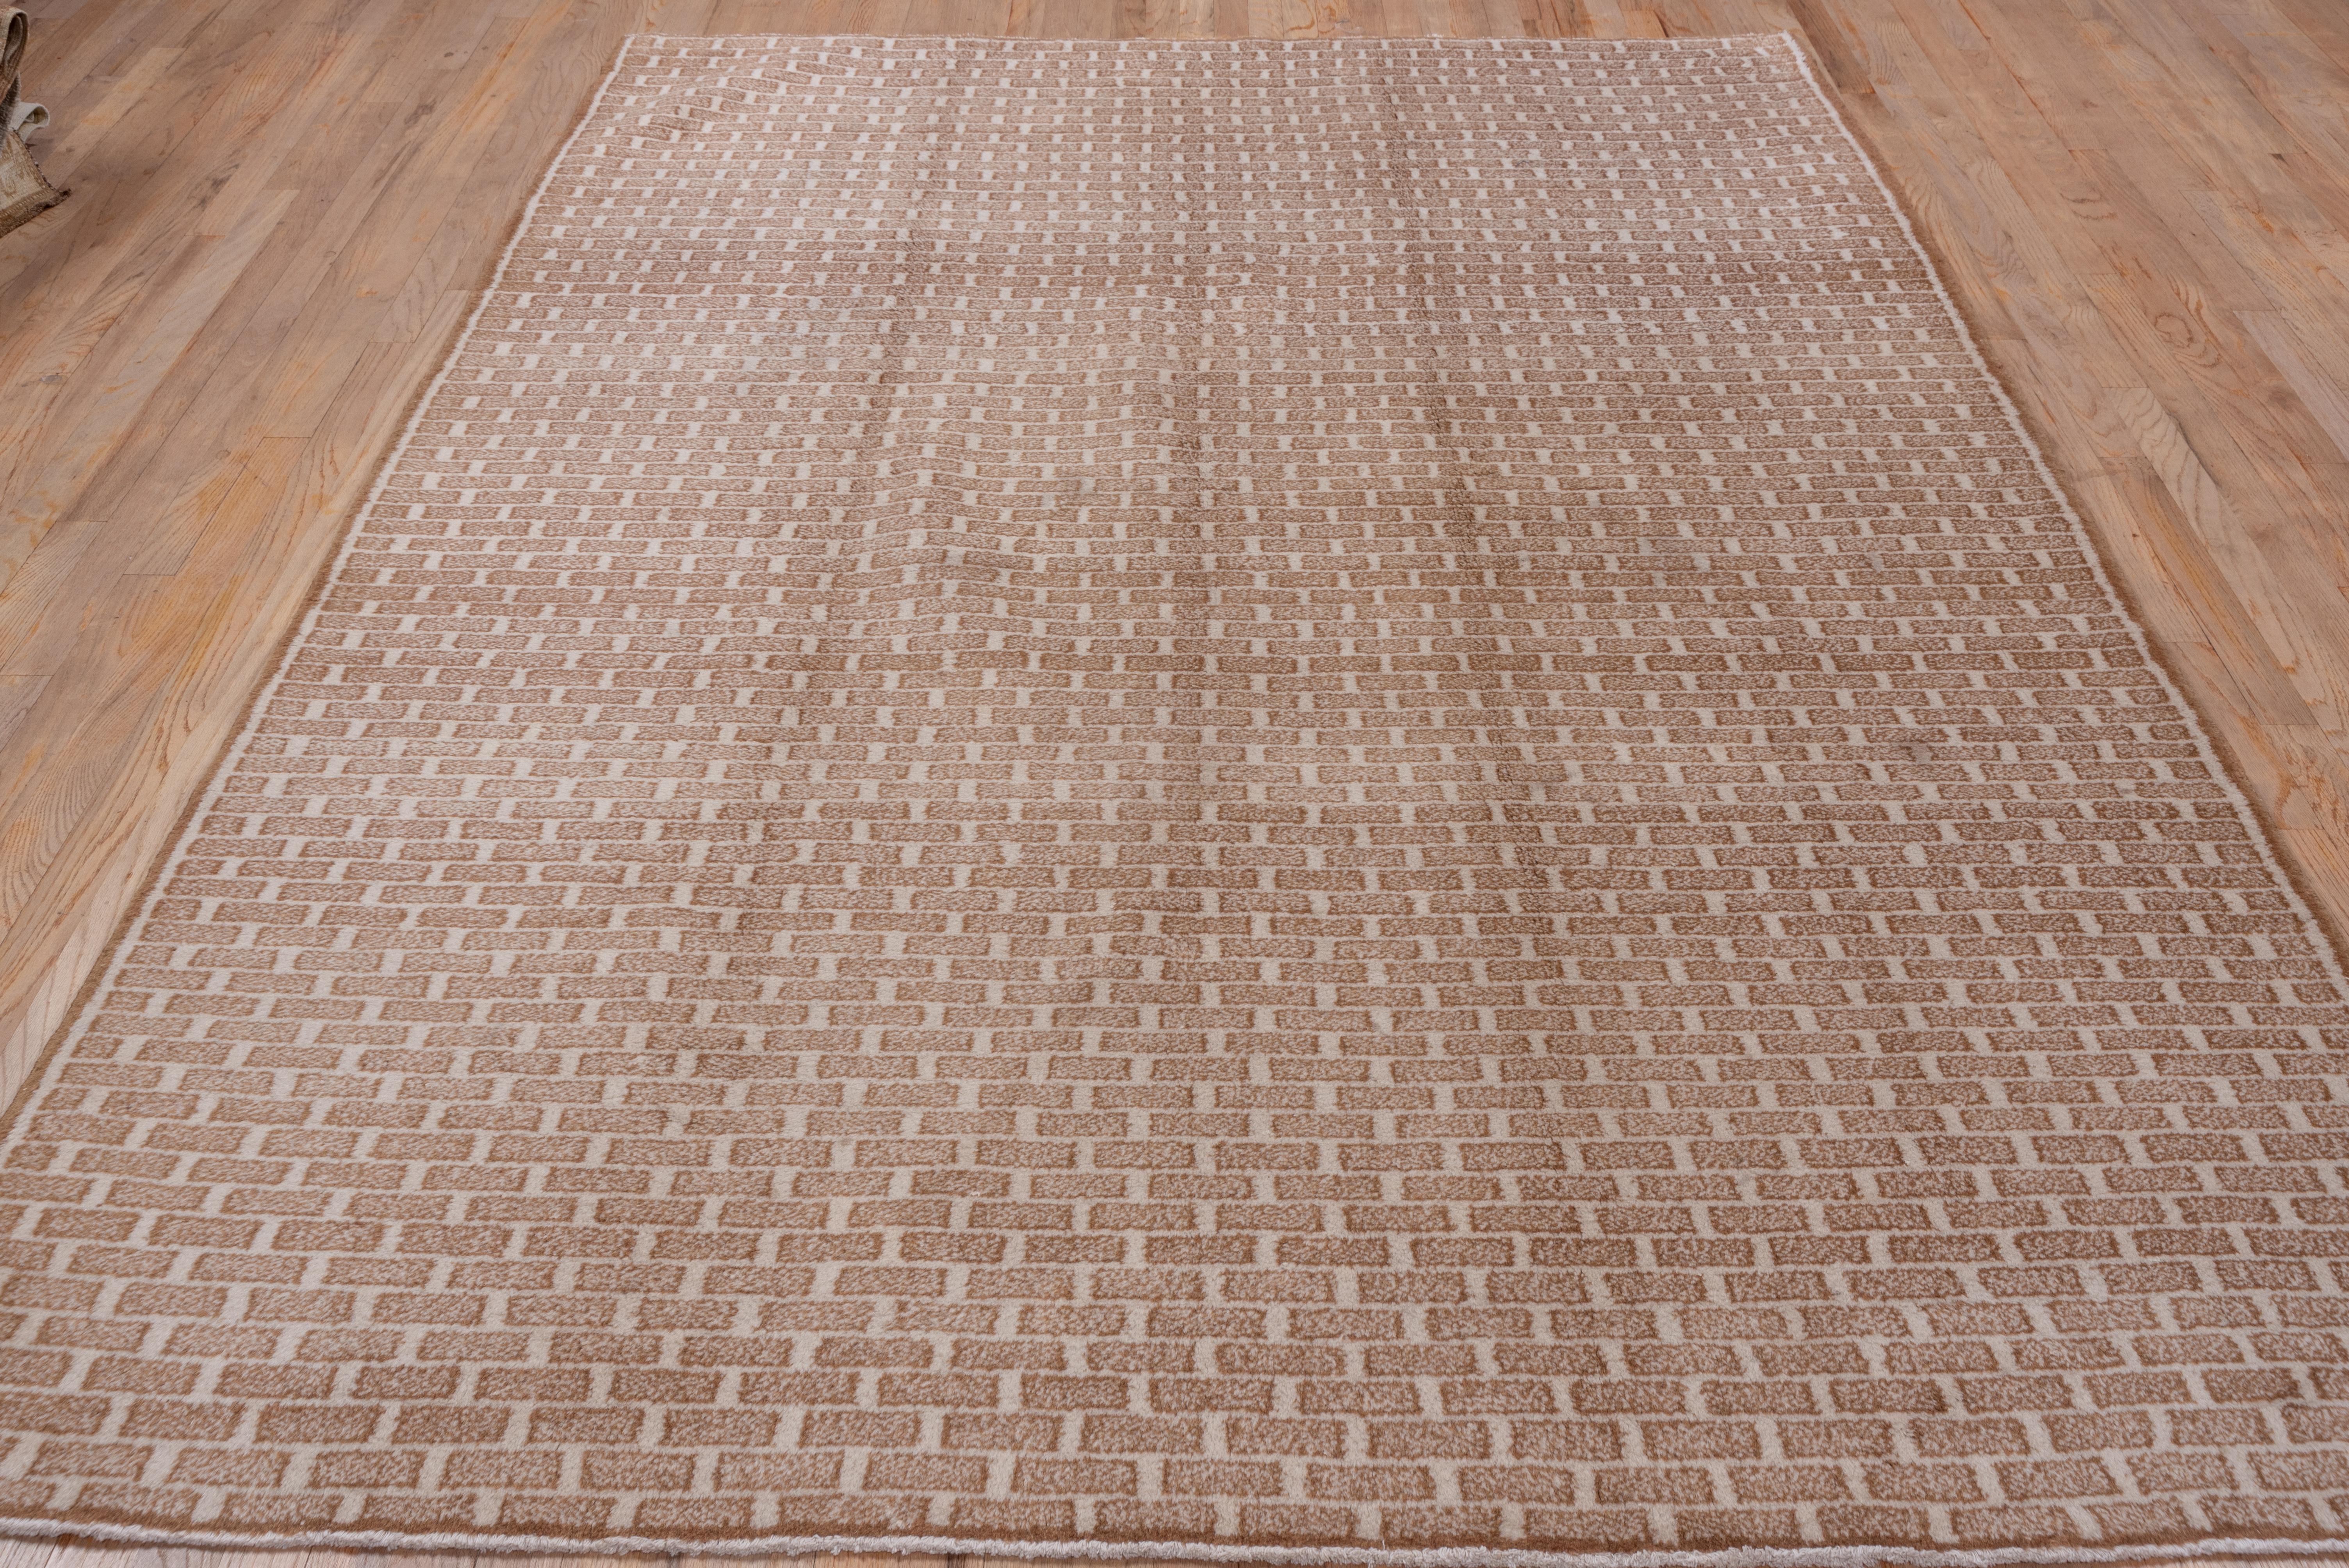 Dieser osttürkische, rustikale Teppich hat ein randloses, elfenbeinfarbenes Feld mit einem gesprenkelten, karamellfarbenen Ziegelmuster. Der Zustand ist sehr gut.